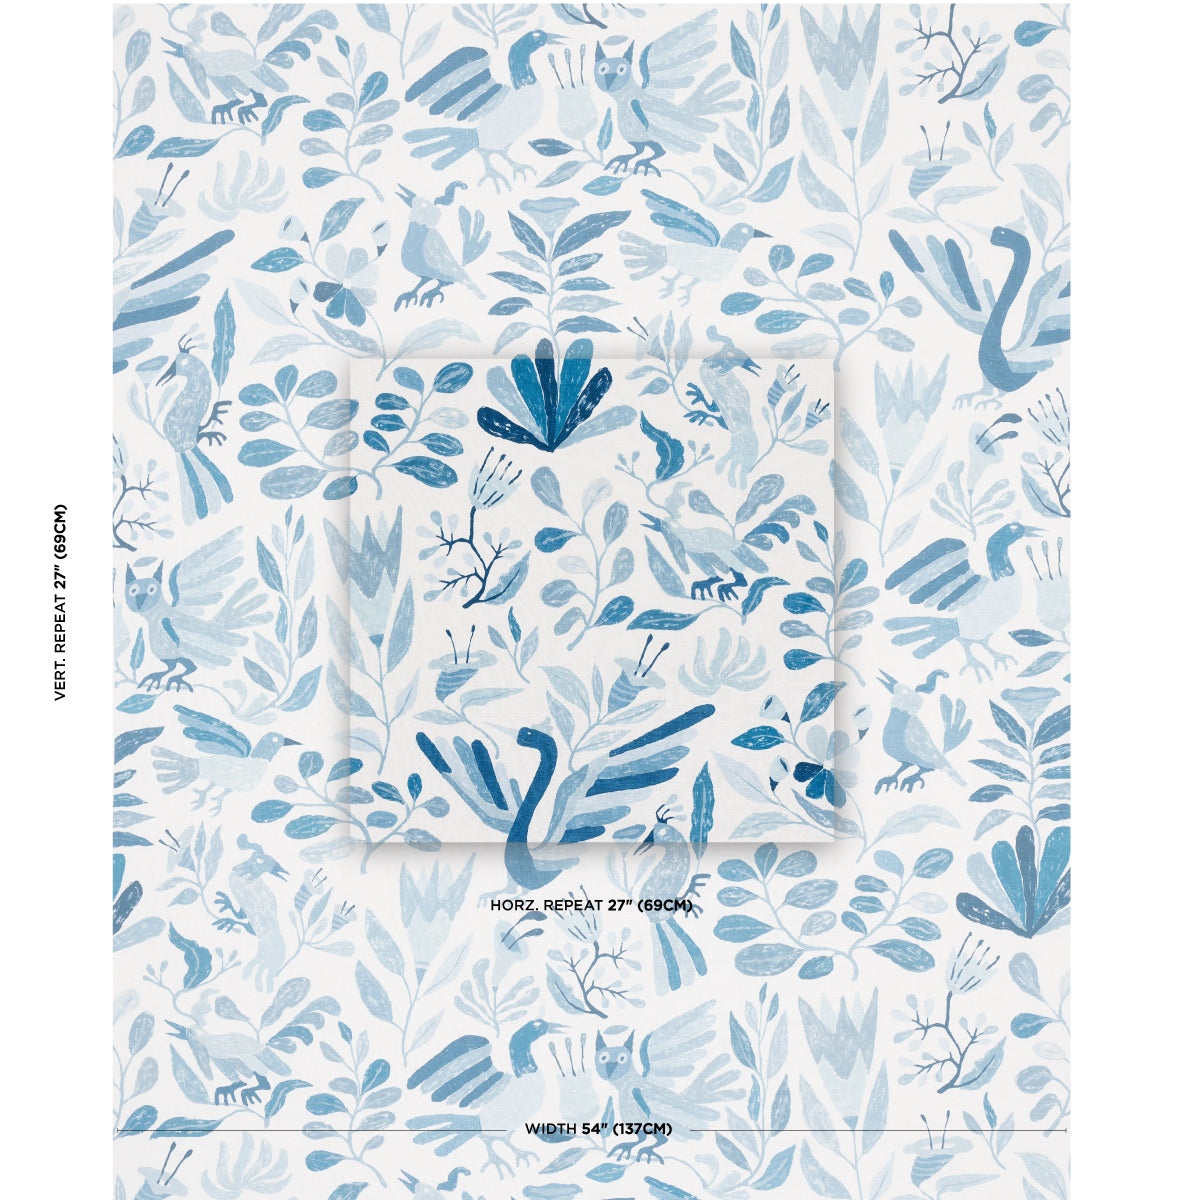 Purchase 180851 | Azulejos, Blue Birds - Schumacher Fabric